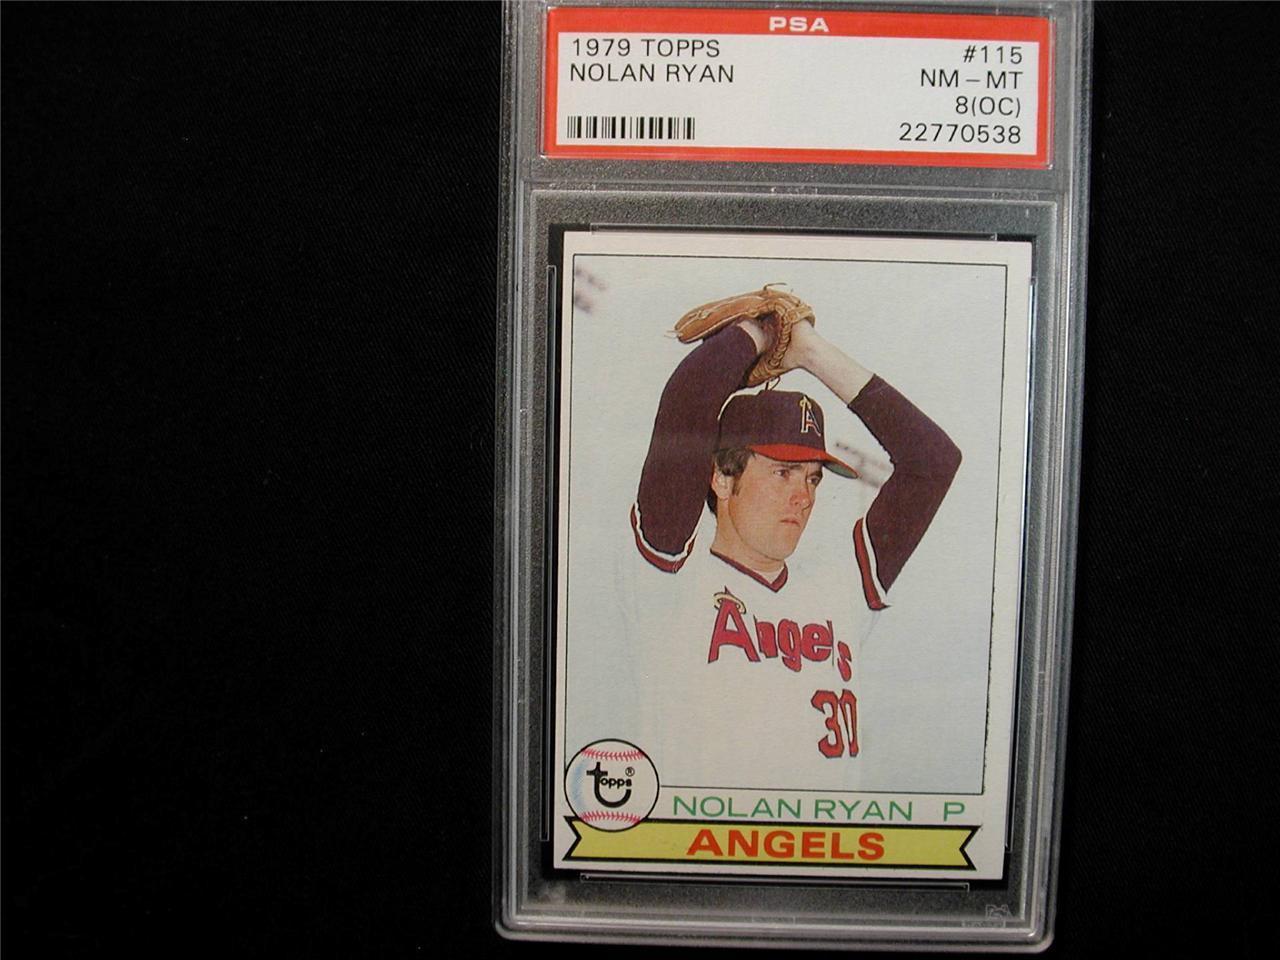 1979 Topps Nolan Ryan Baseball card #115 PSA Graded NM-MT 8 (OC)